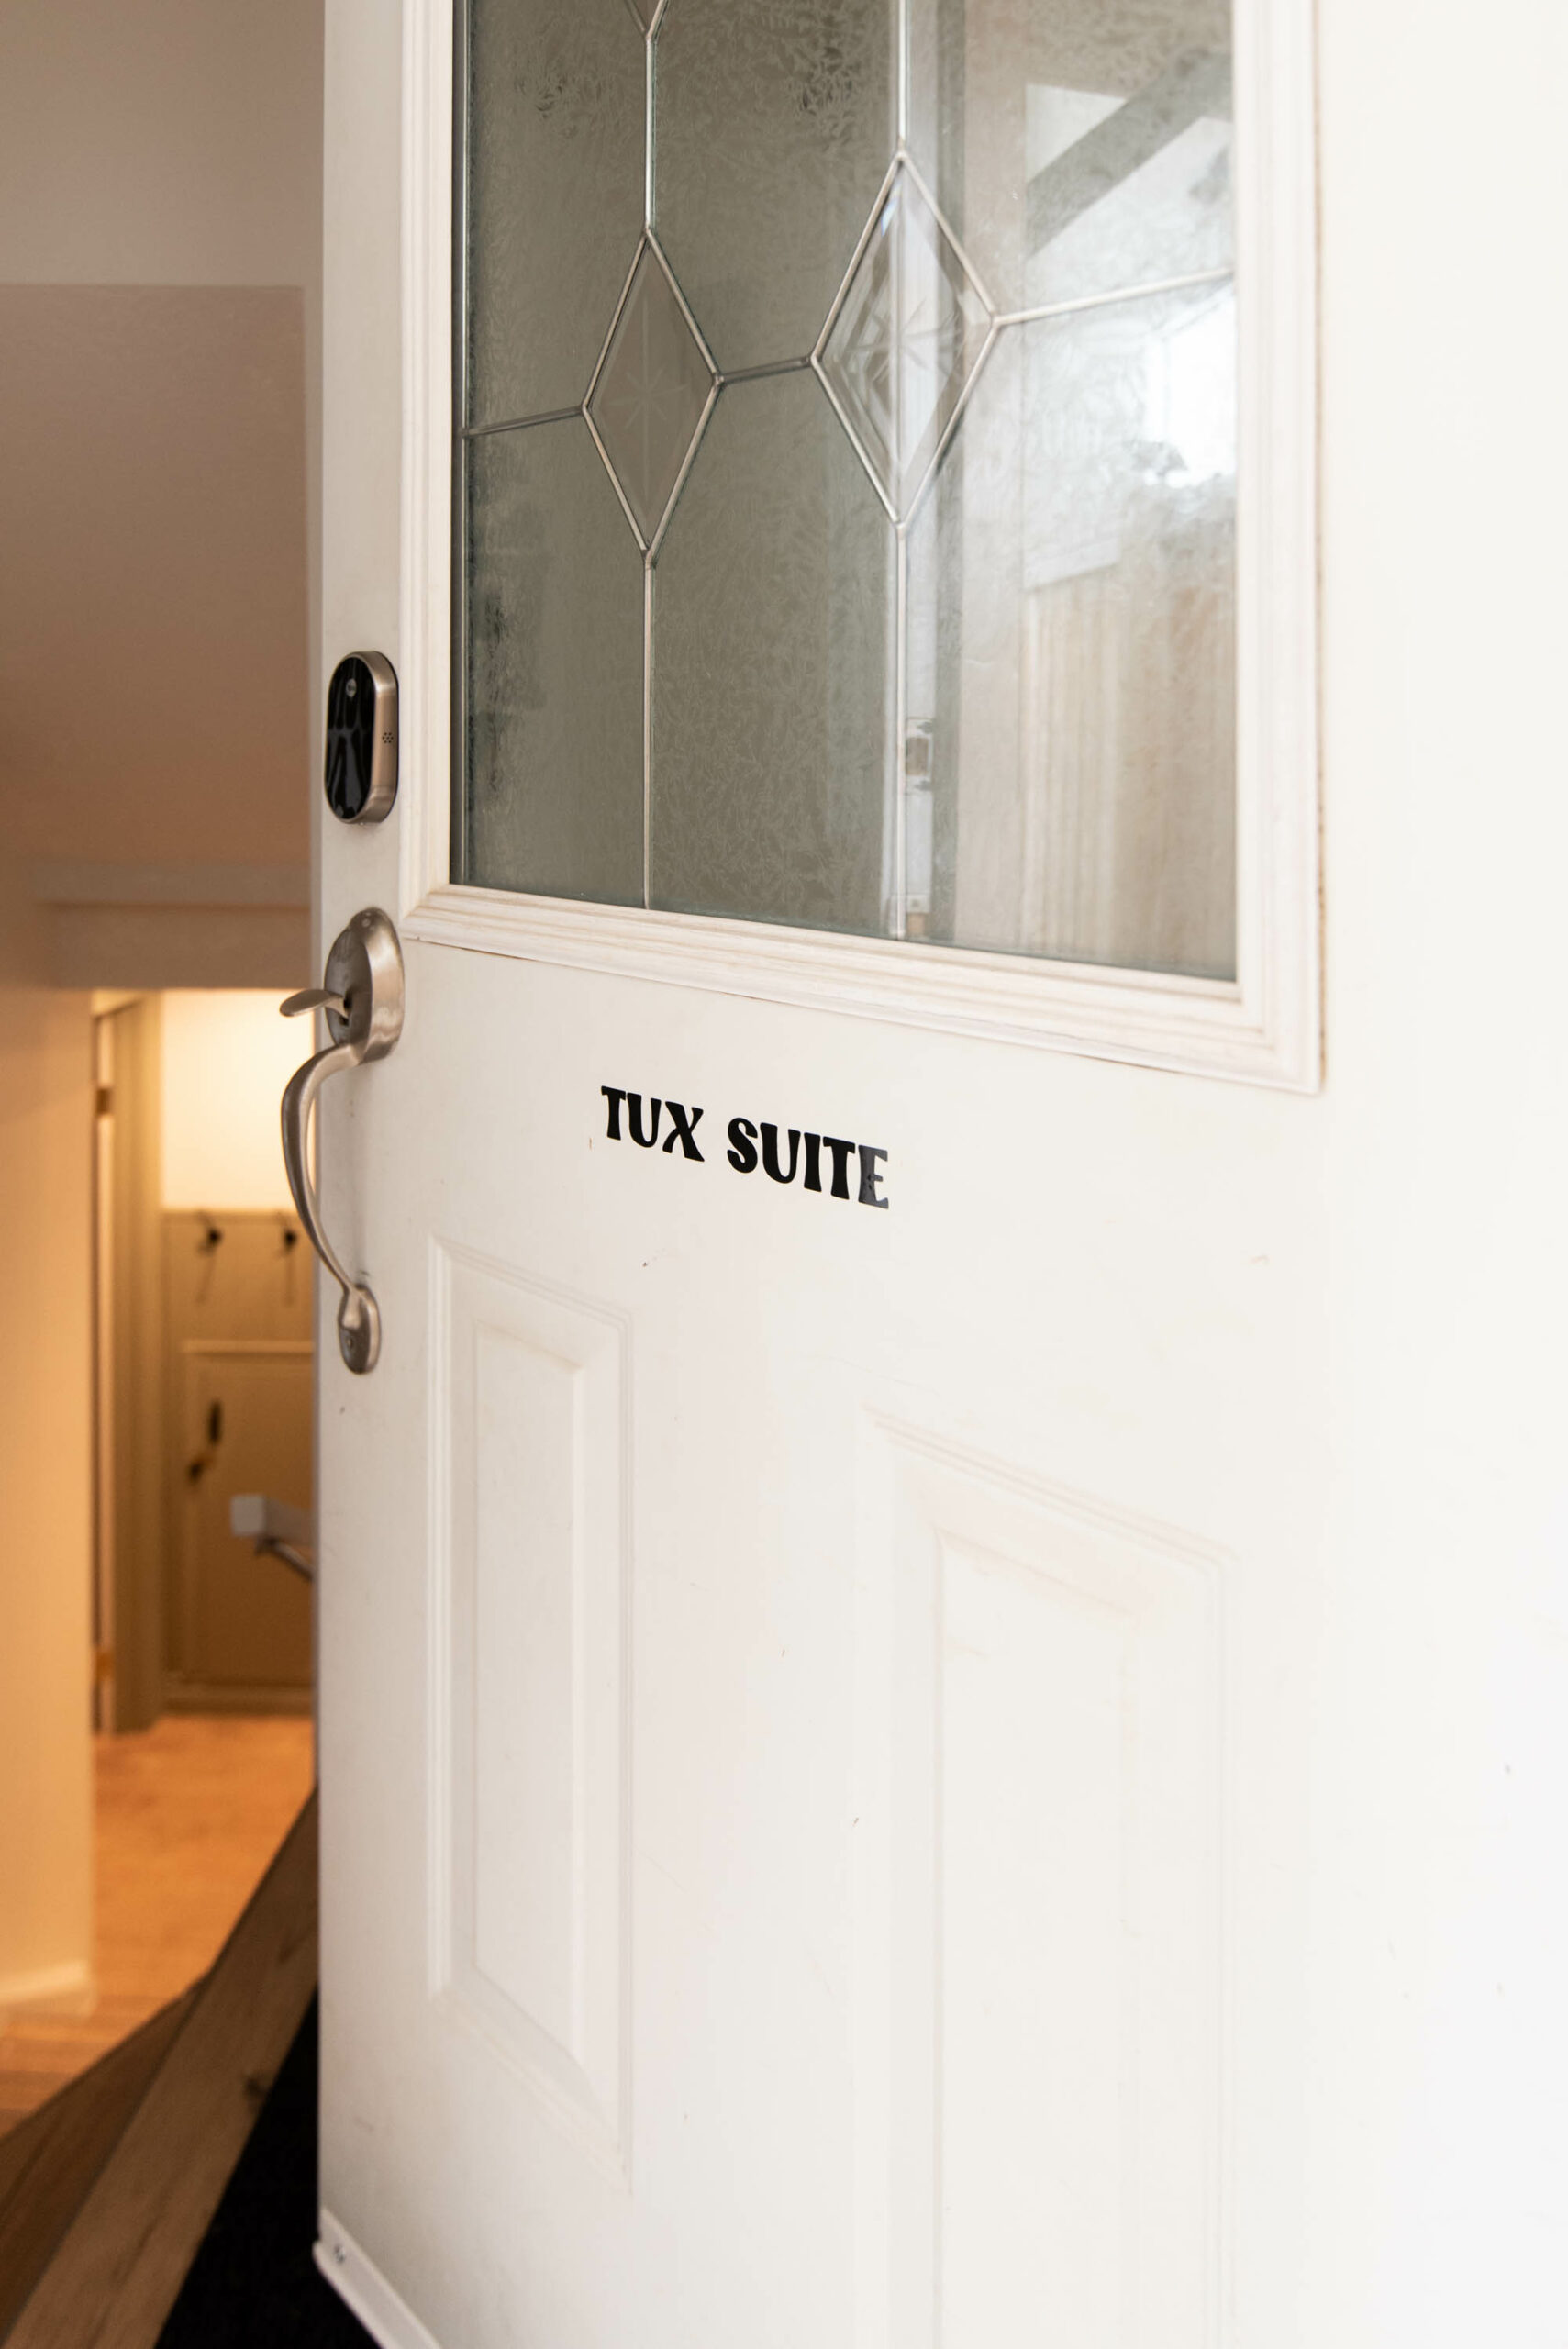 Cozy hideaway 'tux suite' labelled on door to a basement suite rental